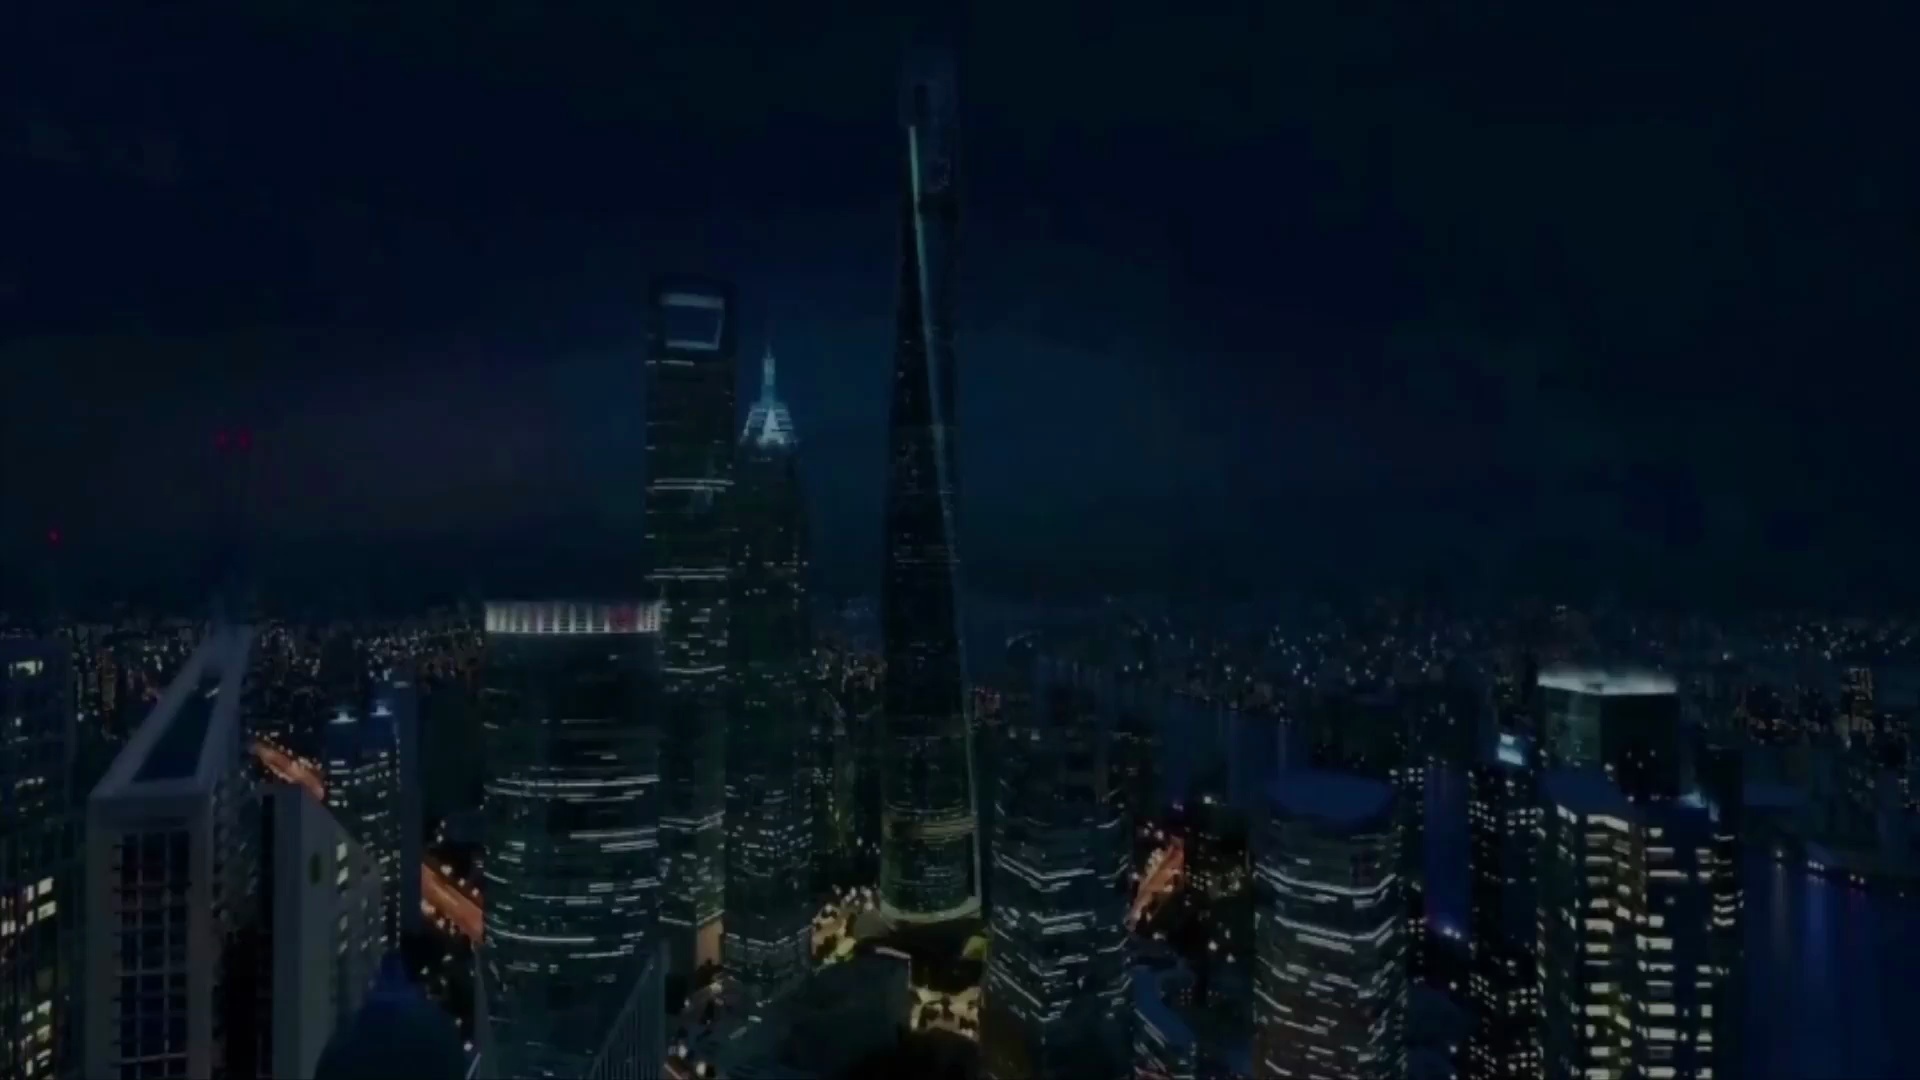 Shanghai Tower Lighting Performance Rendering Video